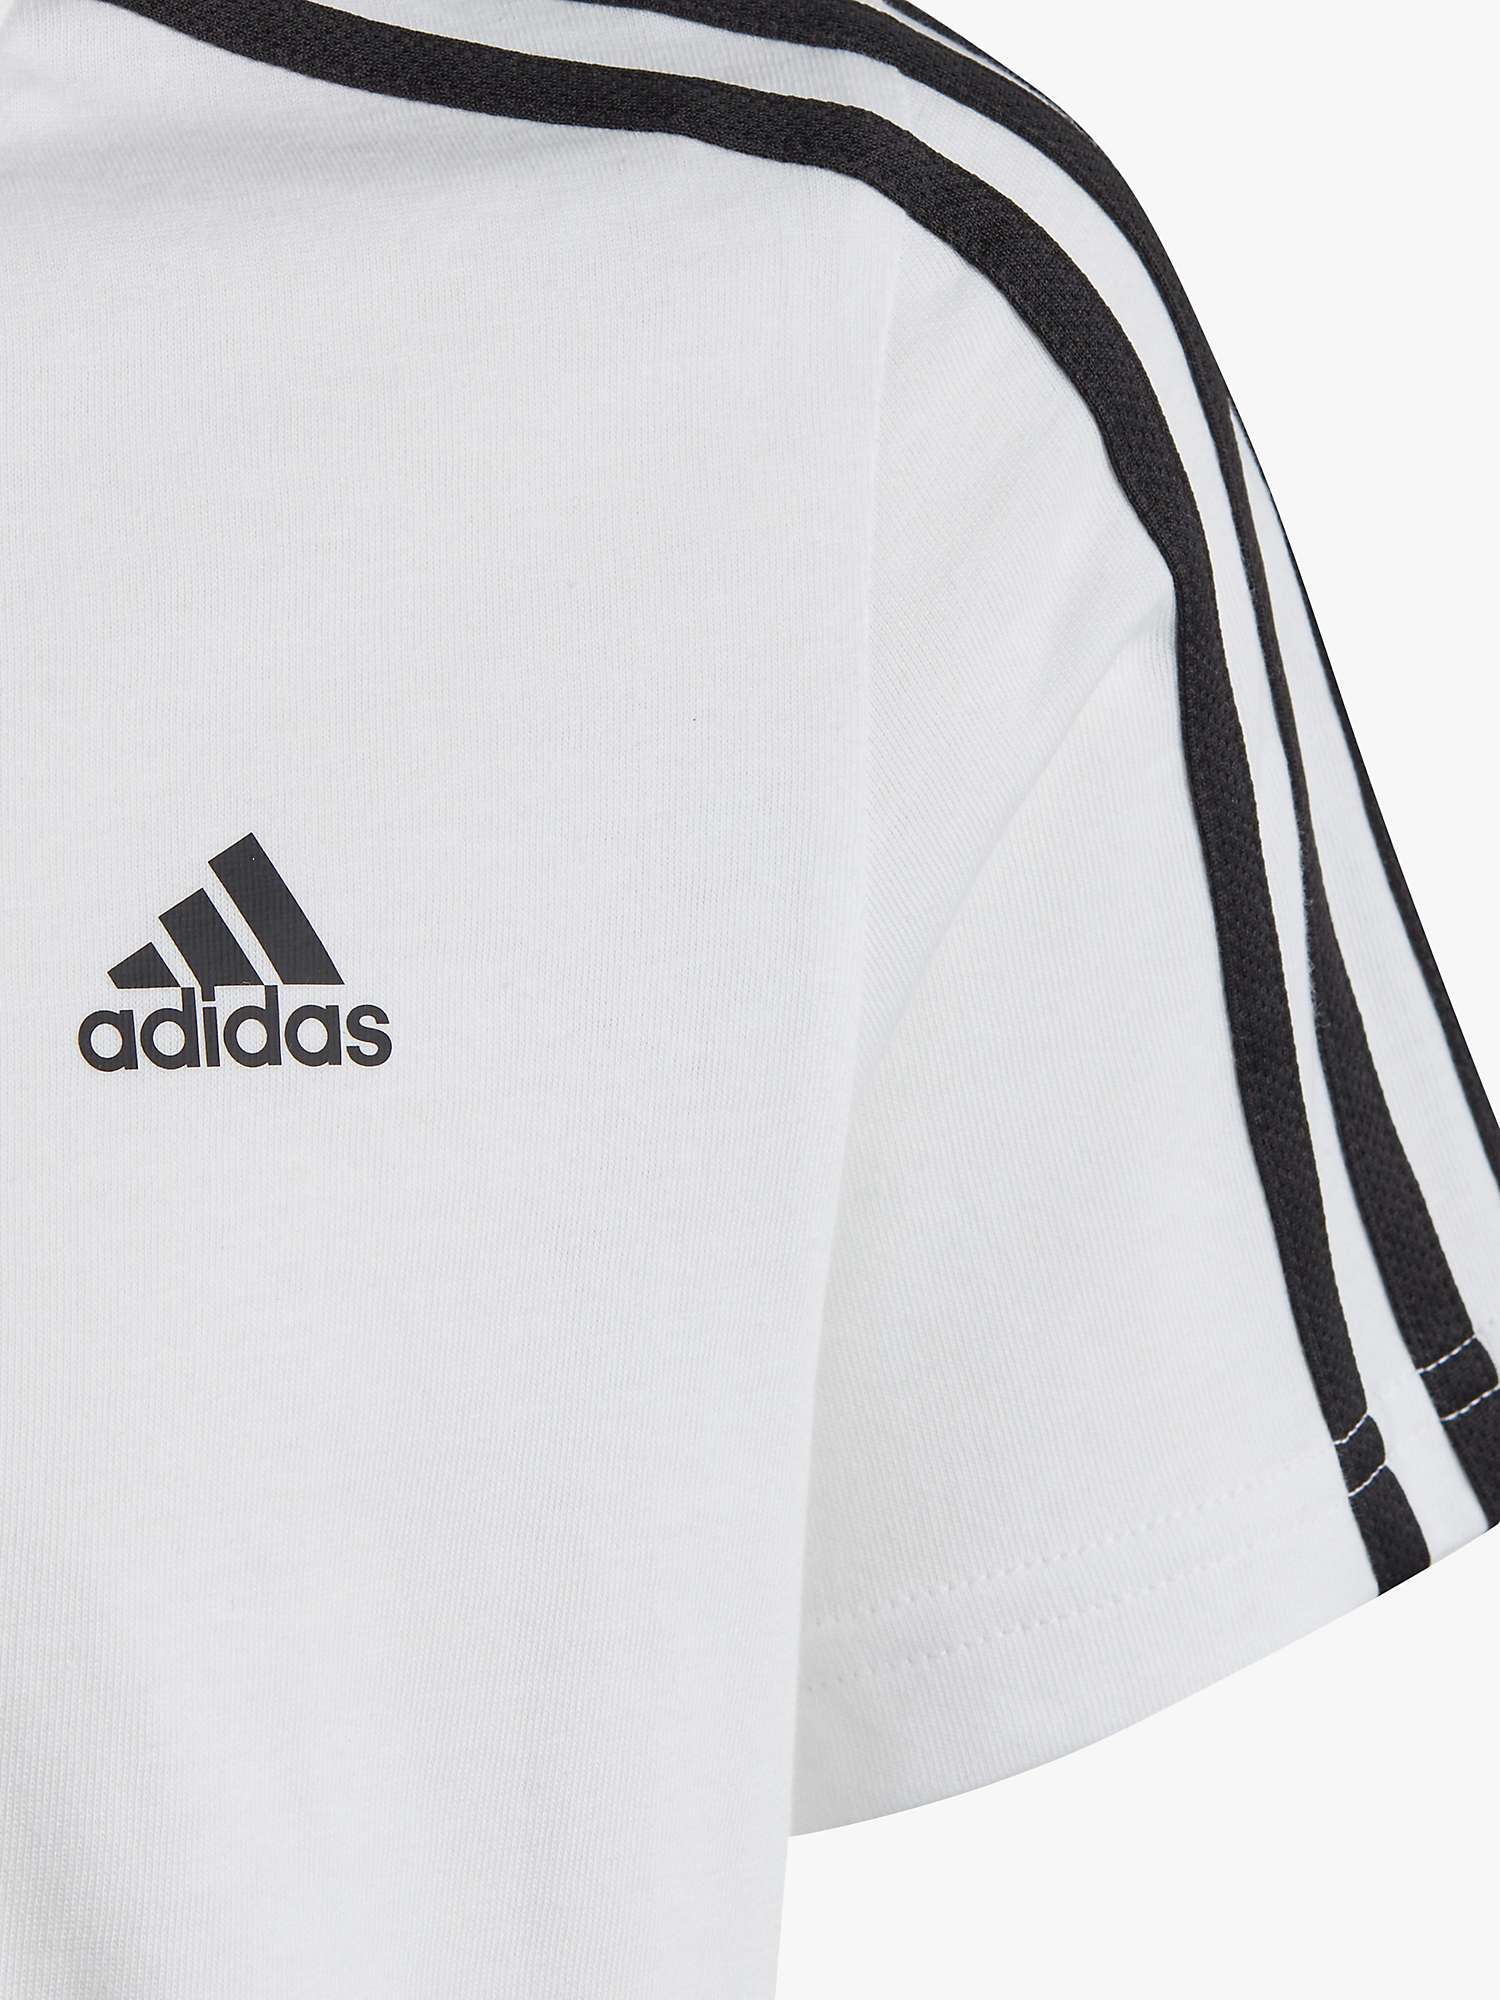 Buy adidas Kids' Stripe Logo Cotton T-Shirt Online at johnlewis.com